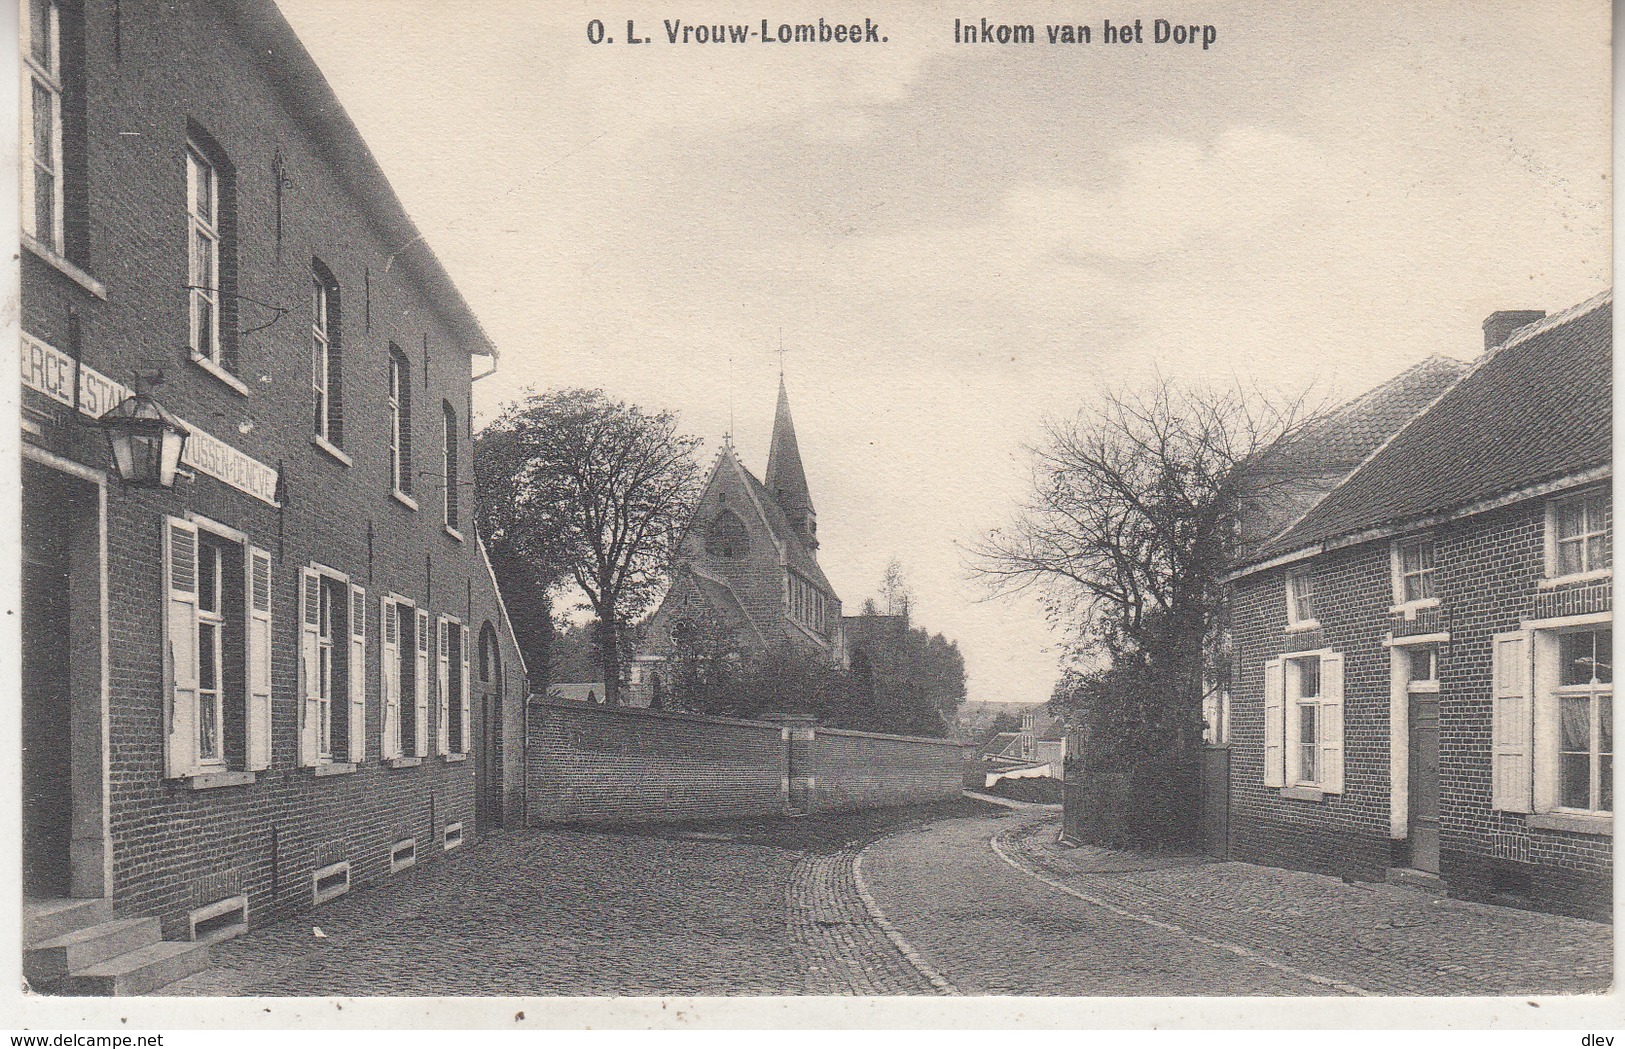 O.L. Vrouw-Lombeek - Inkom Van Het Dorp - 1913 - Uitg. E. Linthout-Cardoen - Roosdaal